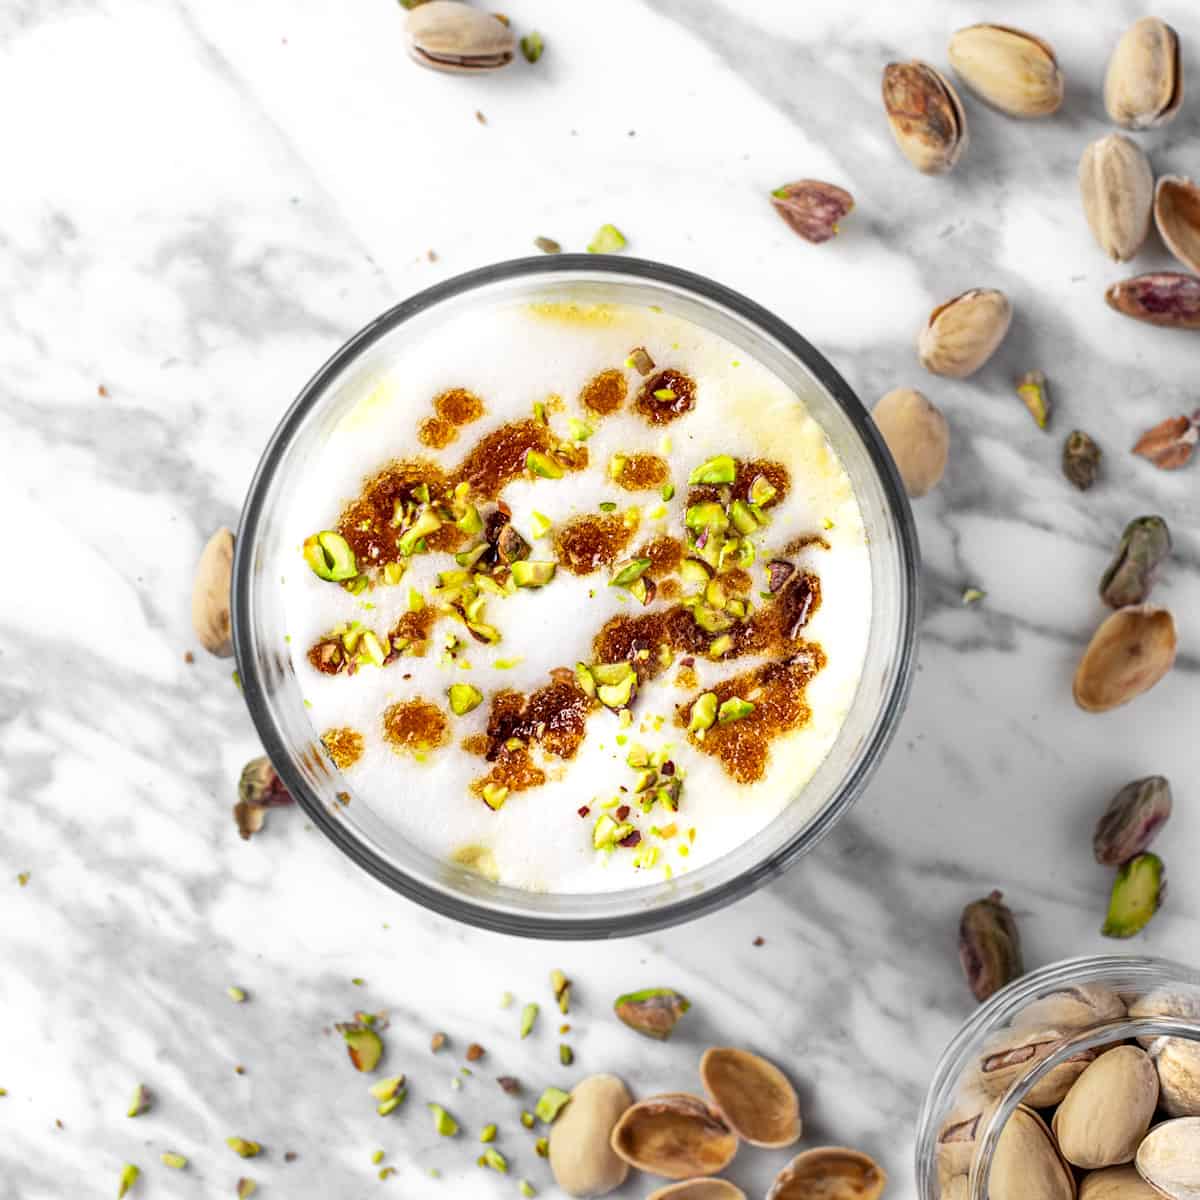 starbucks pistachio latte featured image